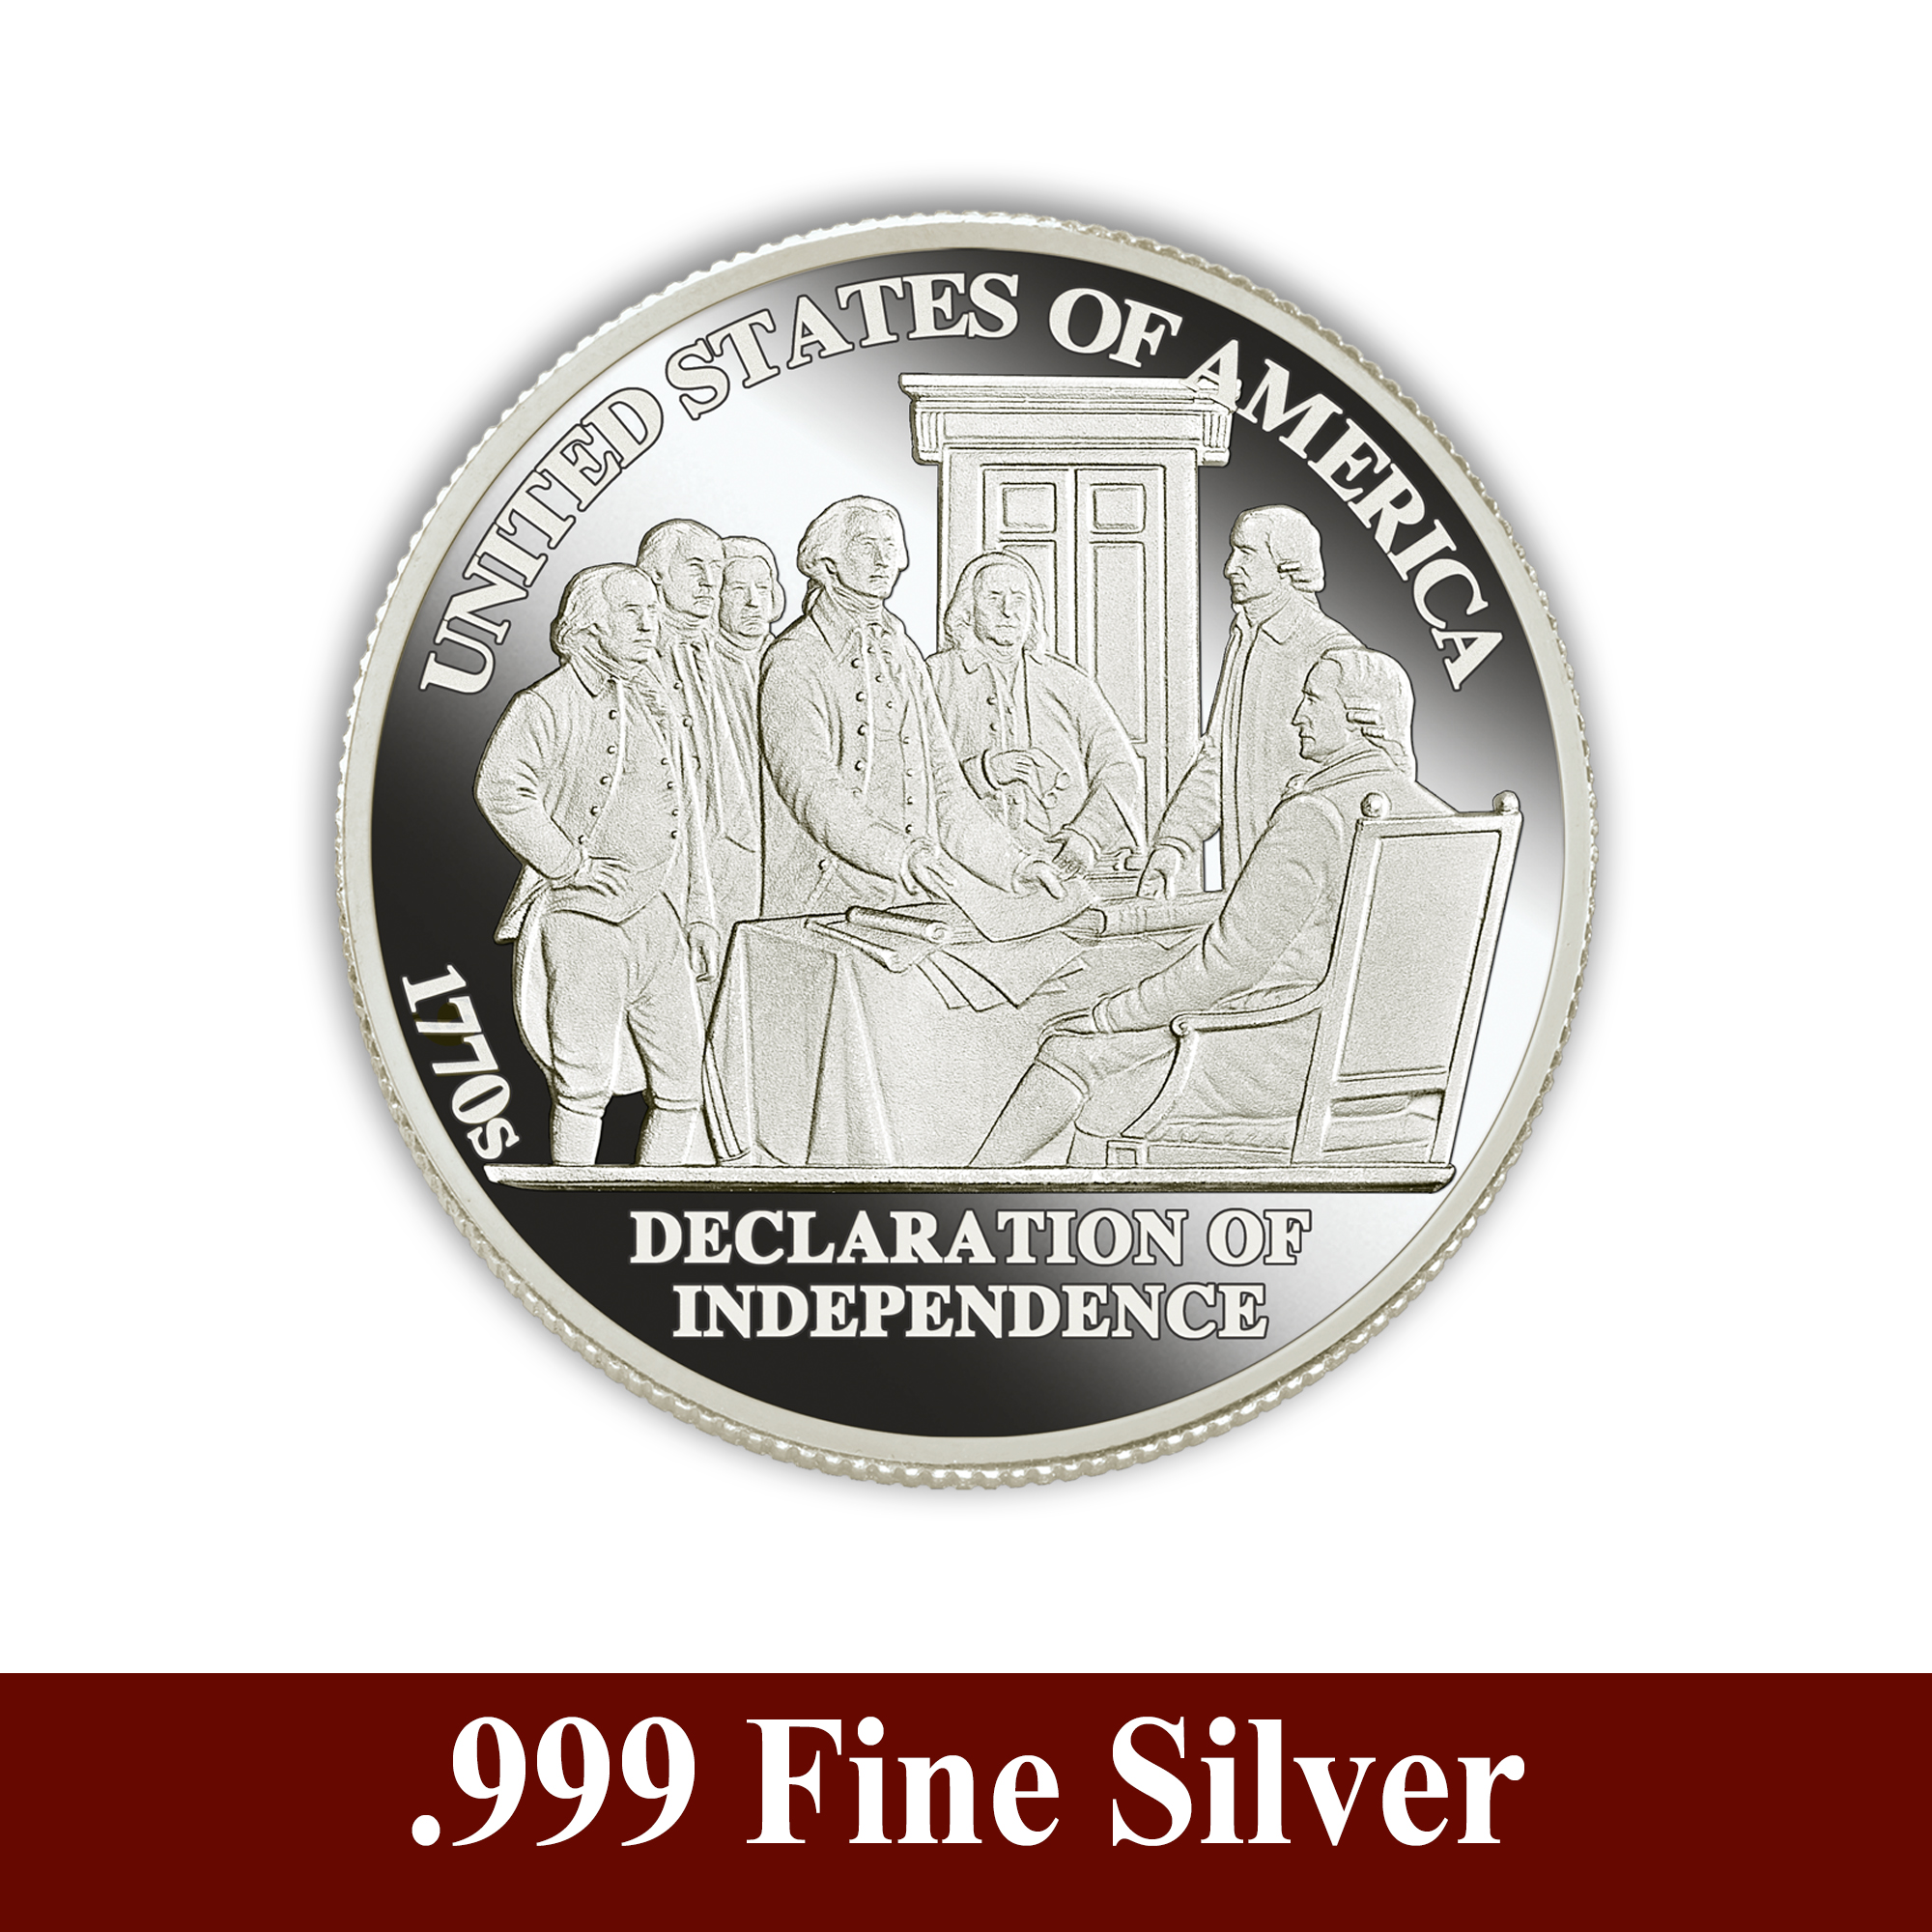 American History Silver Bullion Collection 5541 0146 b commemorative